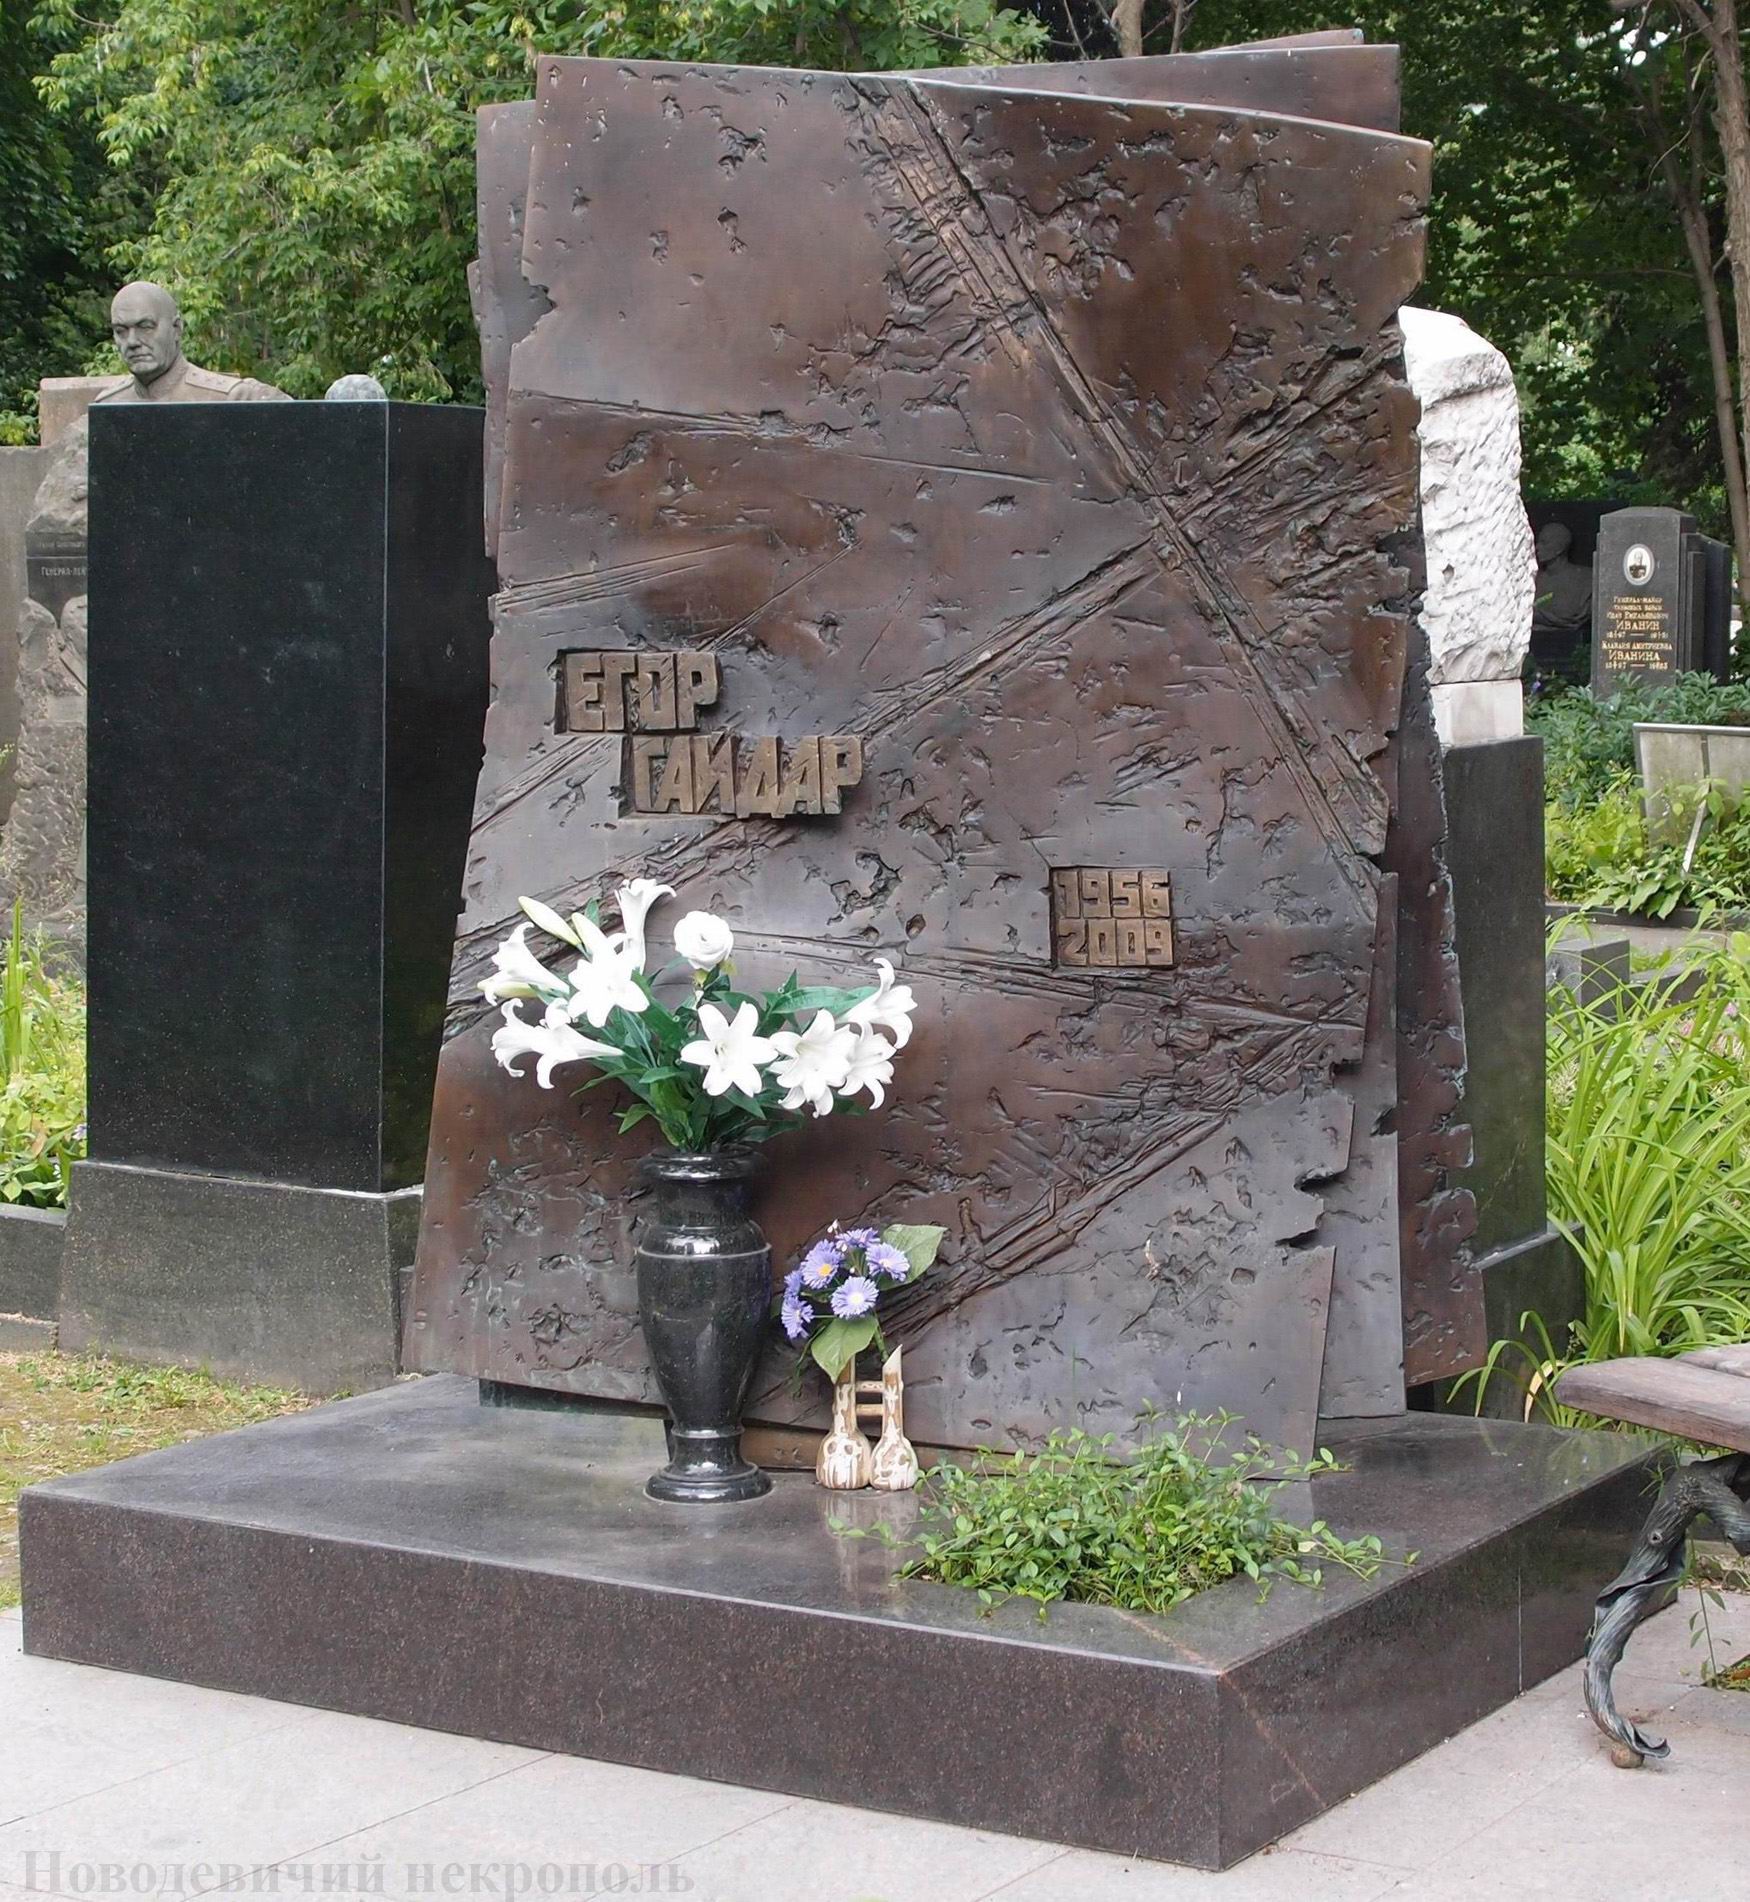 Памятник на могиле Гайдара Е.Т. (1956-2009), ск. А.Балашов, арх. В.Бухаев, на Новодевичьем кладбище (4-27-14).